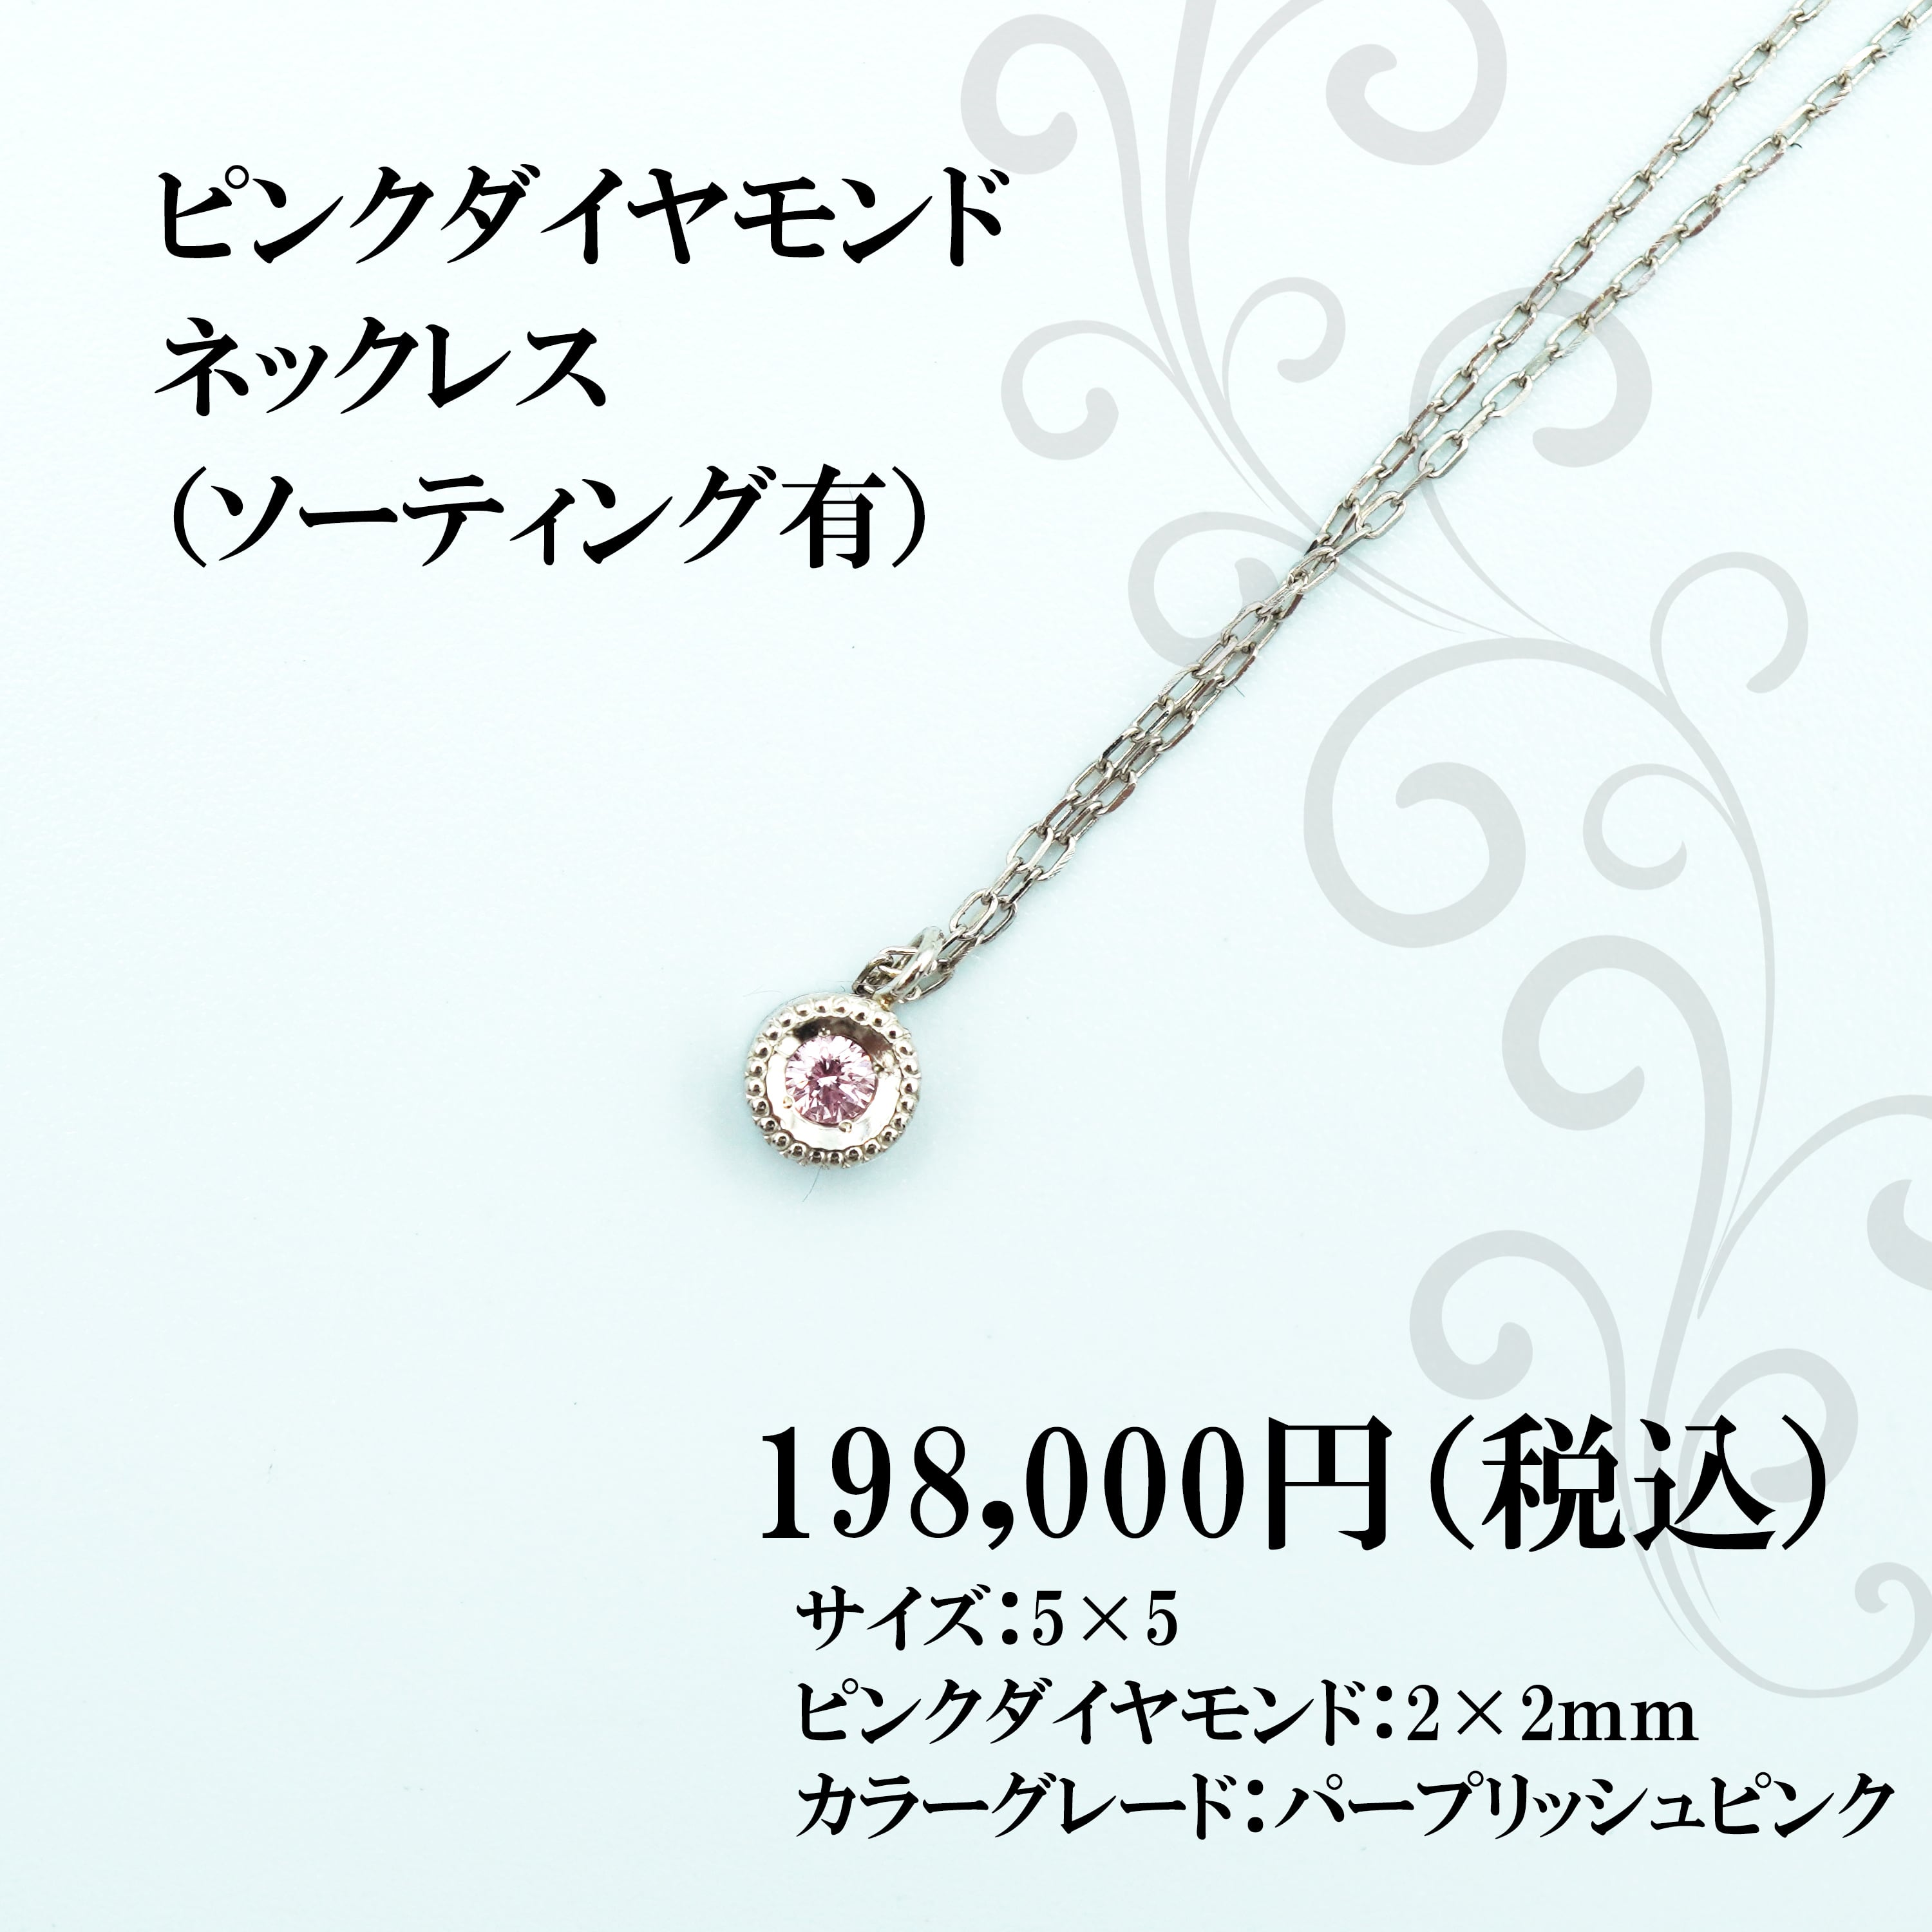 40000円 品質は非常に良い ピンクダイヤモンド ネックレス